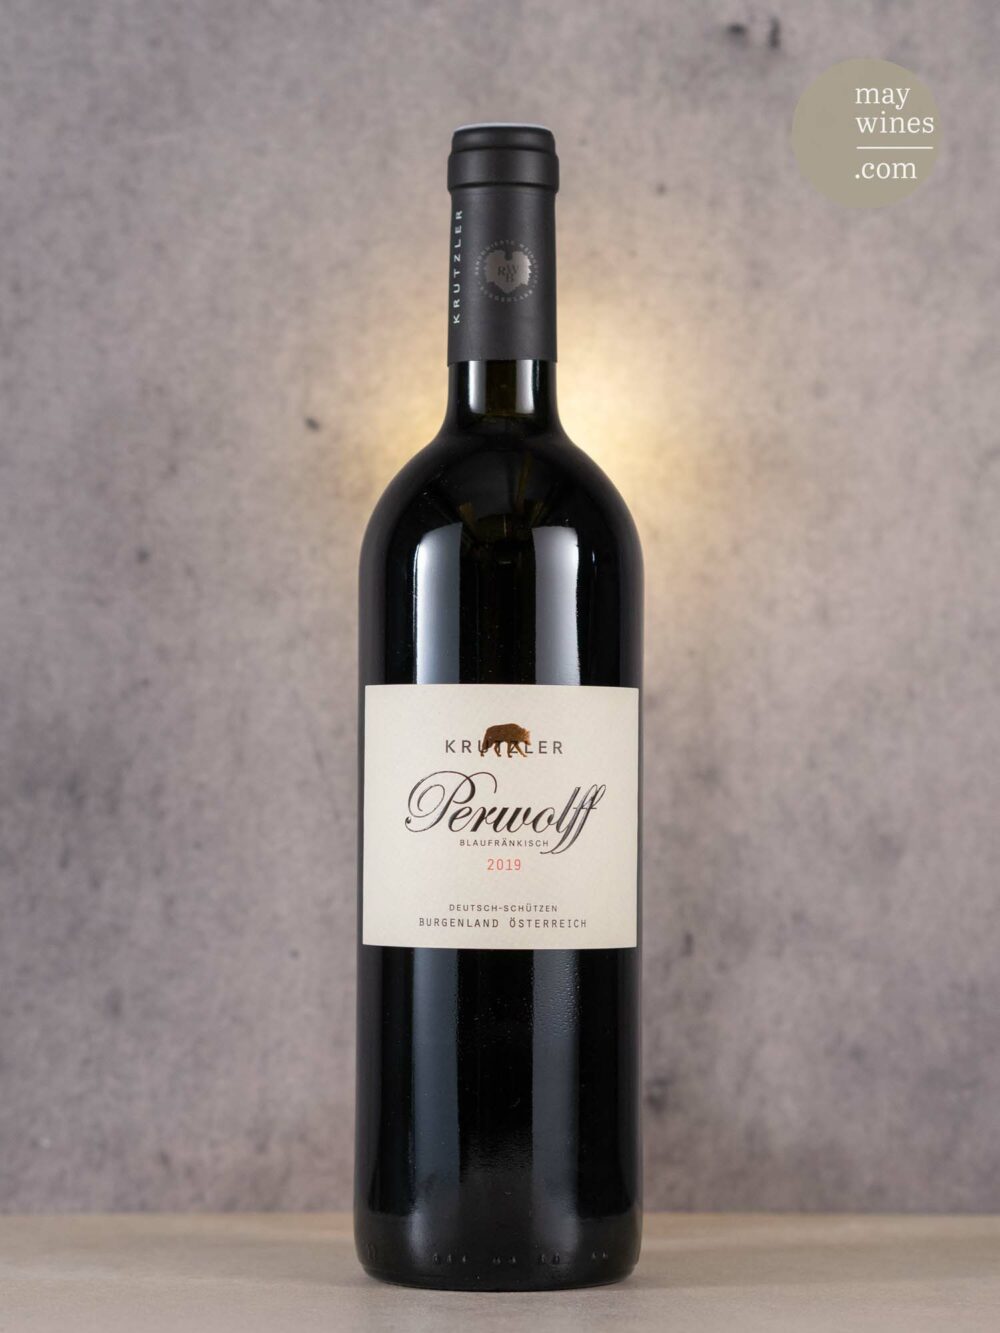 May Wines – Rotwein – 2019 Perwolff - Weingut Krutzler